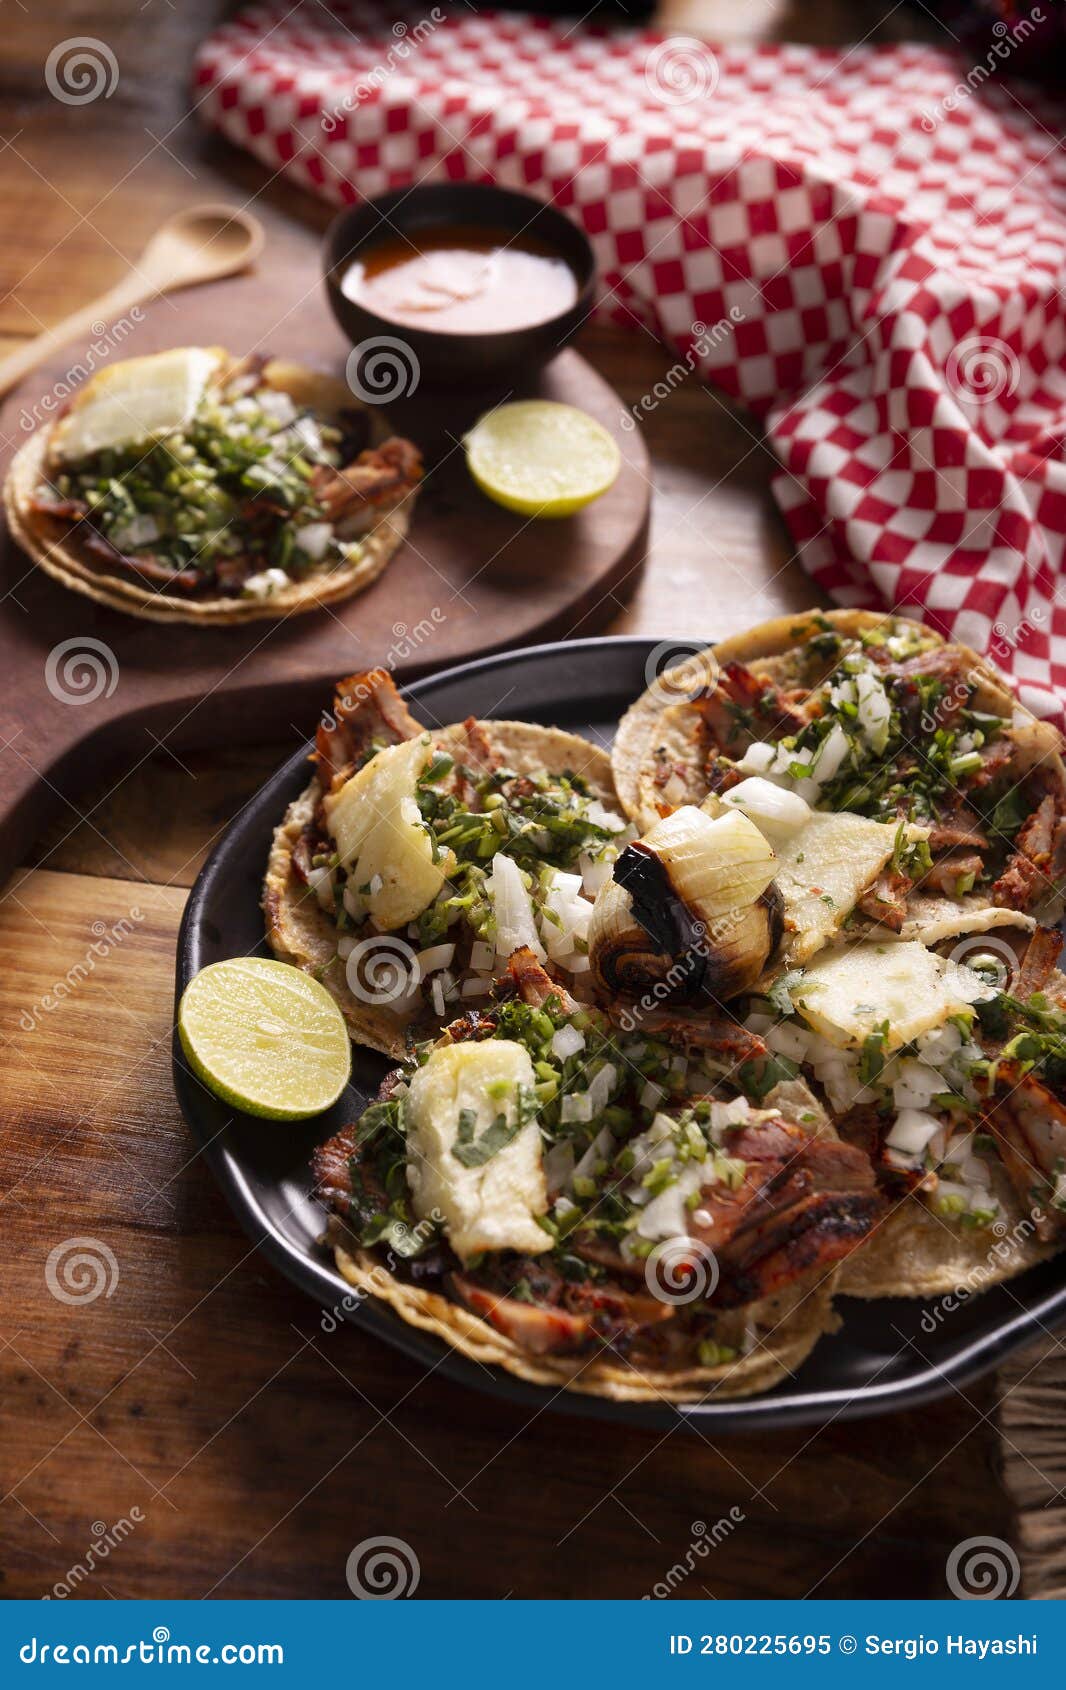 homemade tacos al pastor recipe